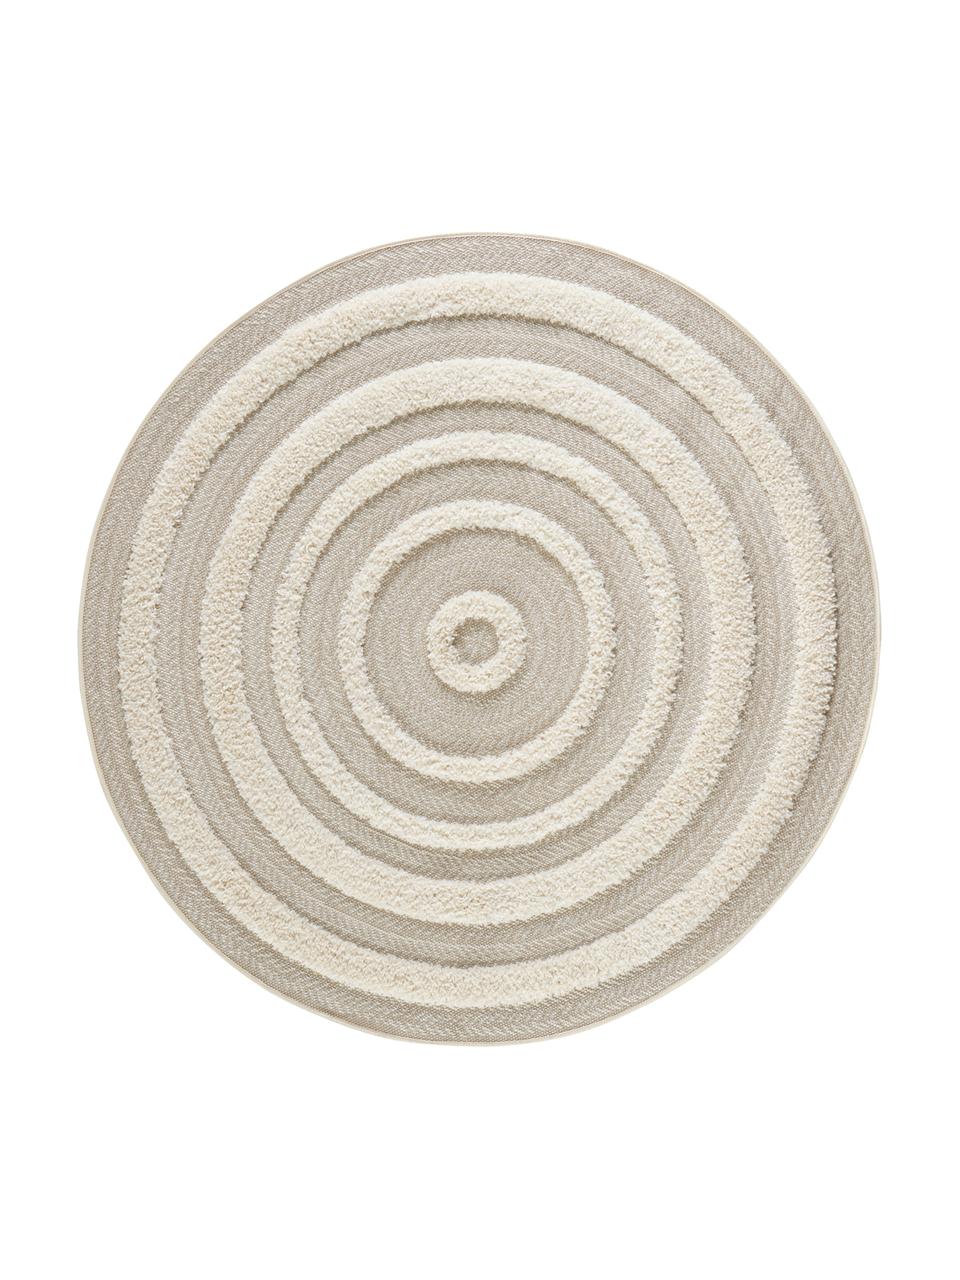 Okrągły dywan wewnętrzny/zewnętrzny z wypukłą strukturą Nador, 100% polipropylen, Beżowy, odcienie kremowego, Ø 160 cm (Rozmiar L)